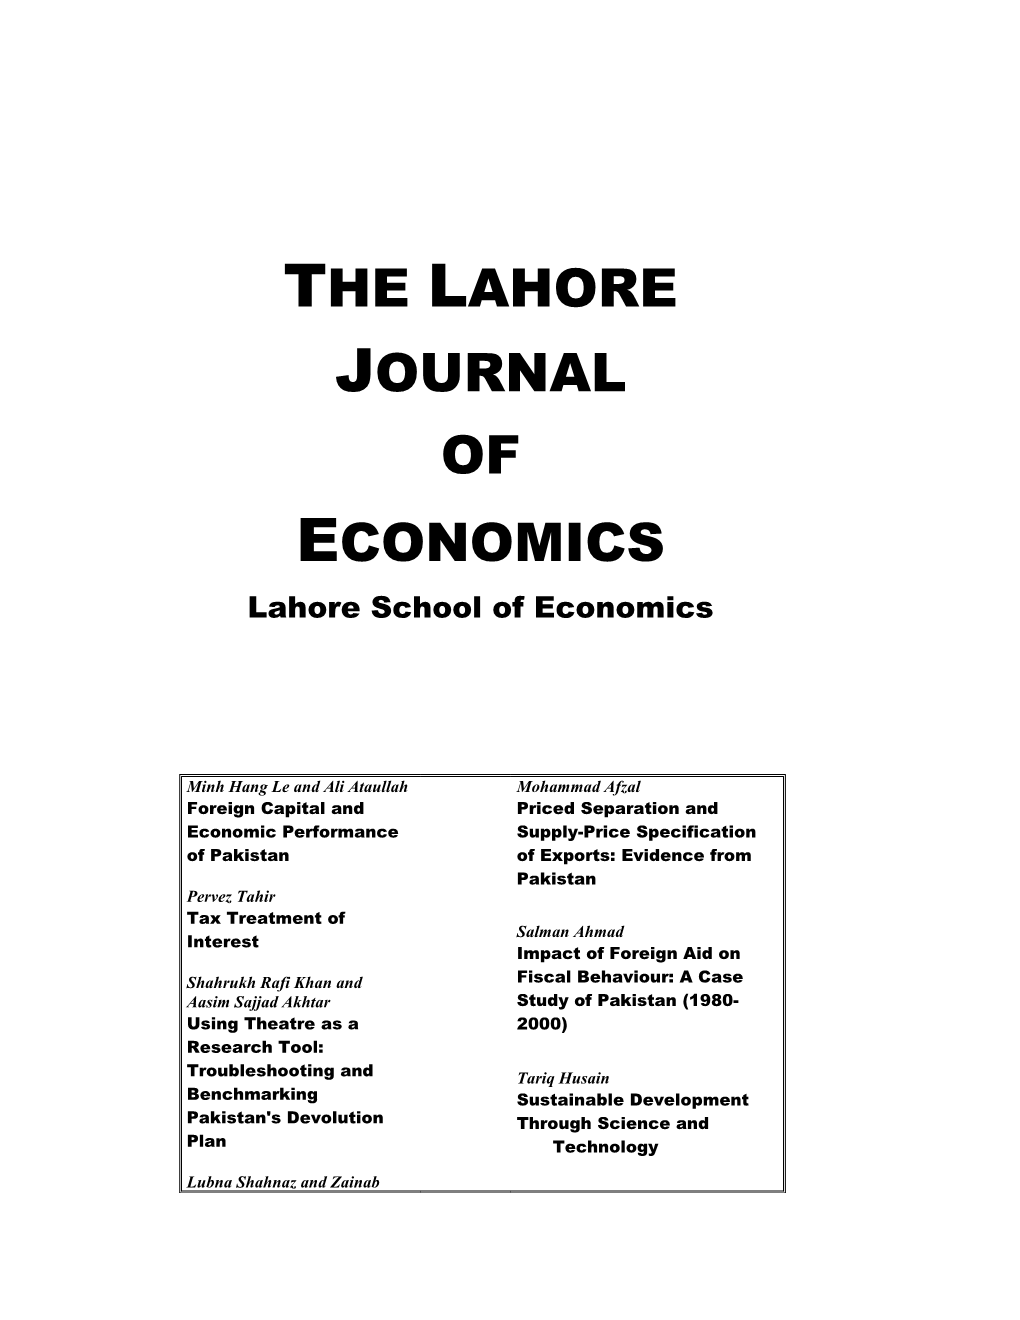 The Lahore Journal of Economics